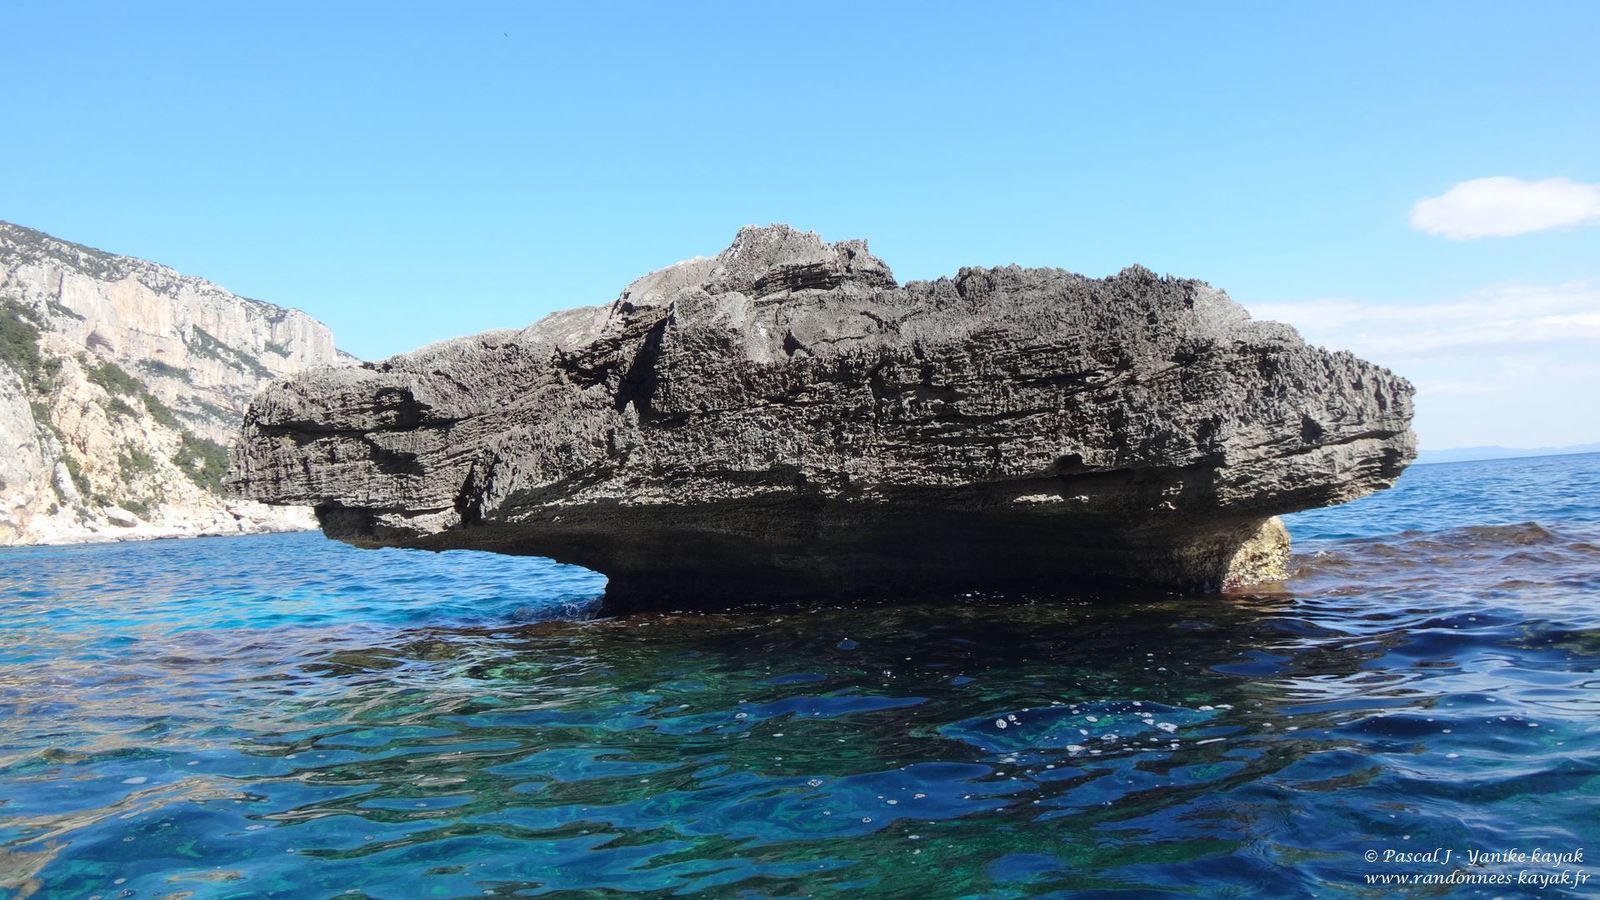 Sardegna 2019, una nuova avventura - Chapitre 3 : à la découverte des merveilles du Golfe d'Orosei (3)